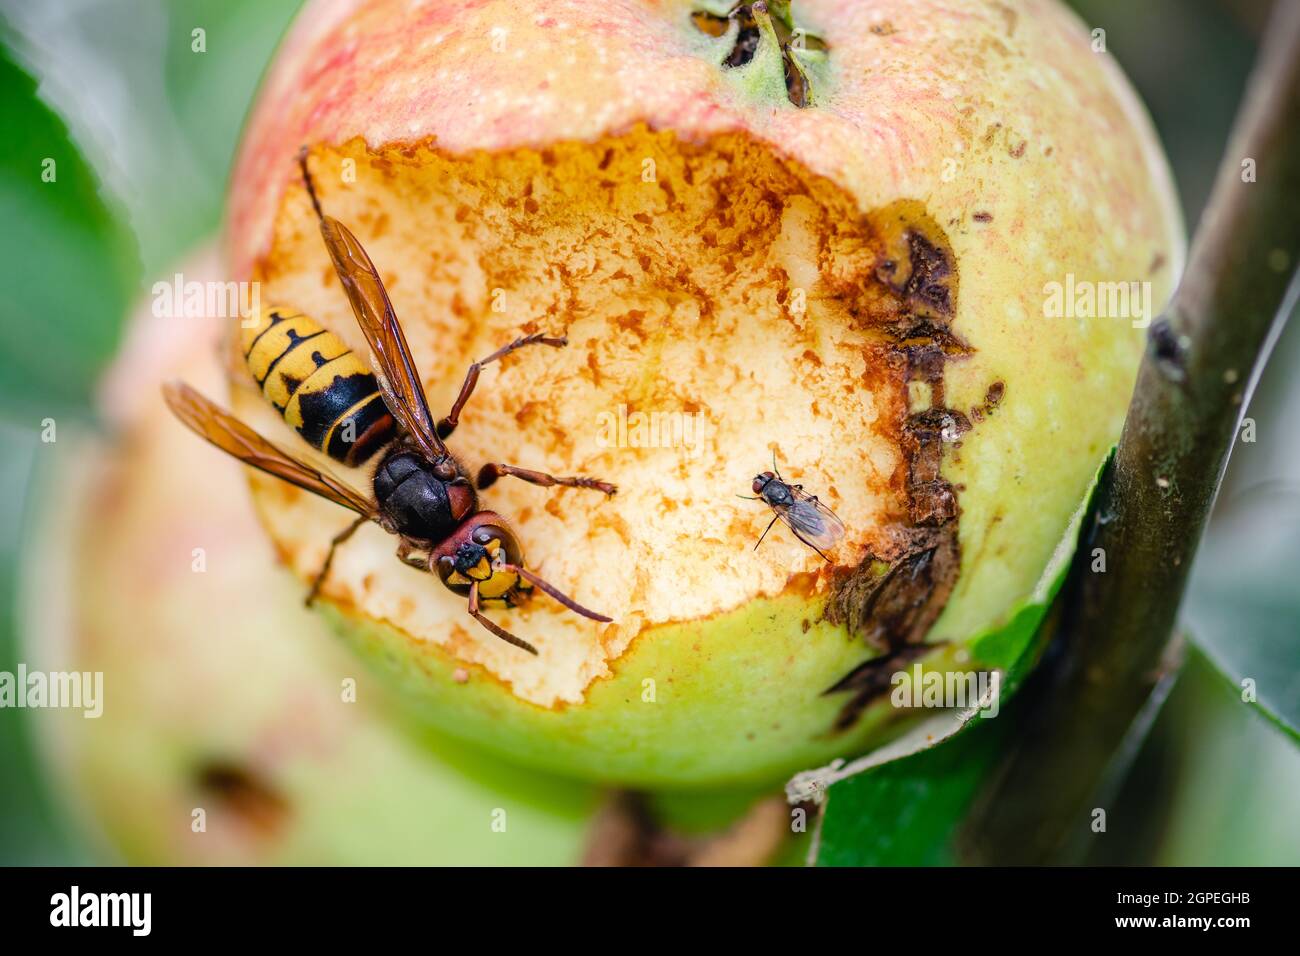 Riesige europäische Hornissenwespe oder Vespa crabro mit einer kleinen Fliege, die einen Apfel aus der Nähe von einem Baum frisst Stockfoto